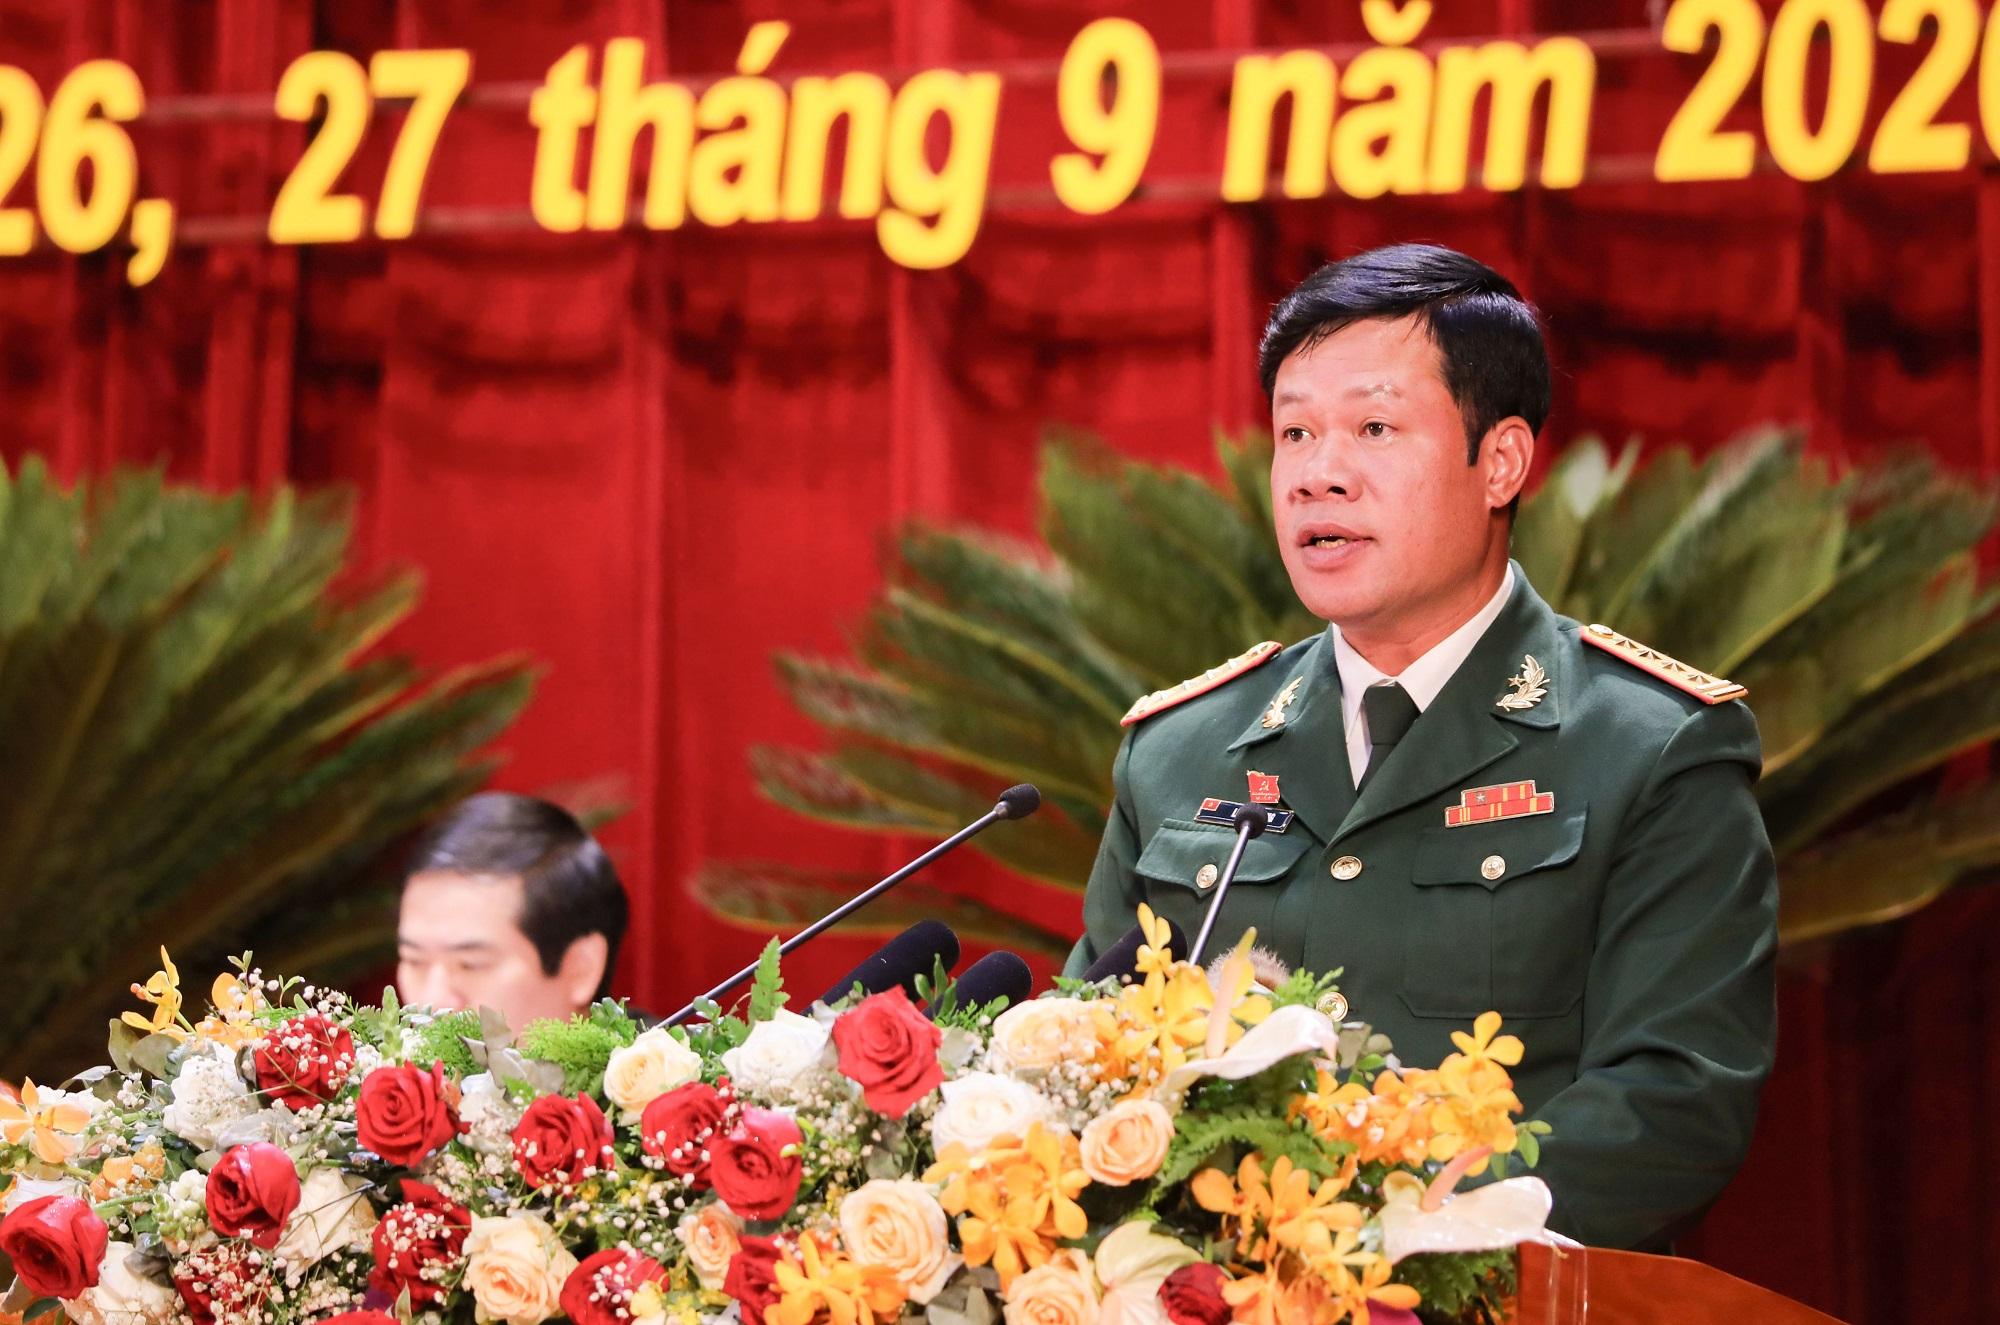 Đại biểu Lê Văn Long, Chỉ huy trưởng Bộ CHQS tỉnh phát biểu tham luận tại hội nghị.